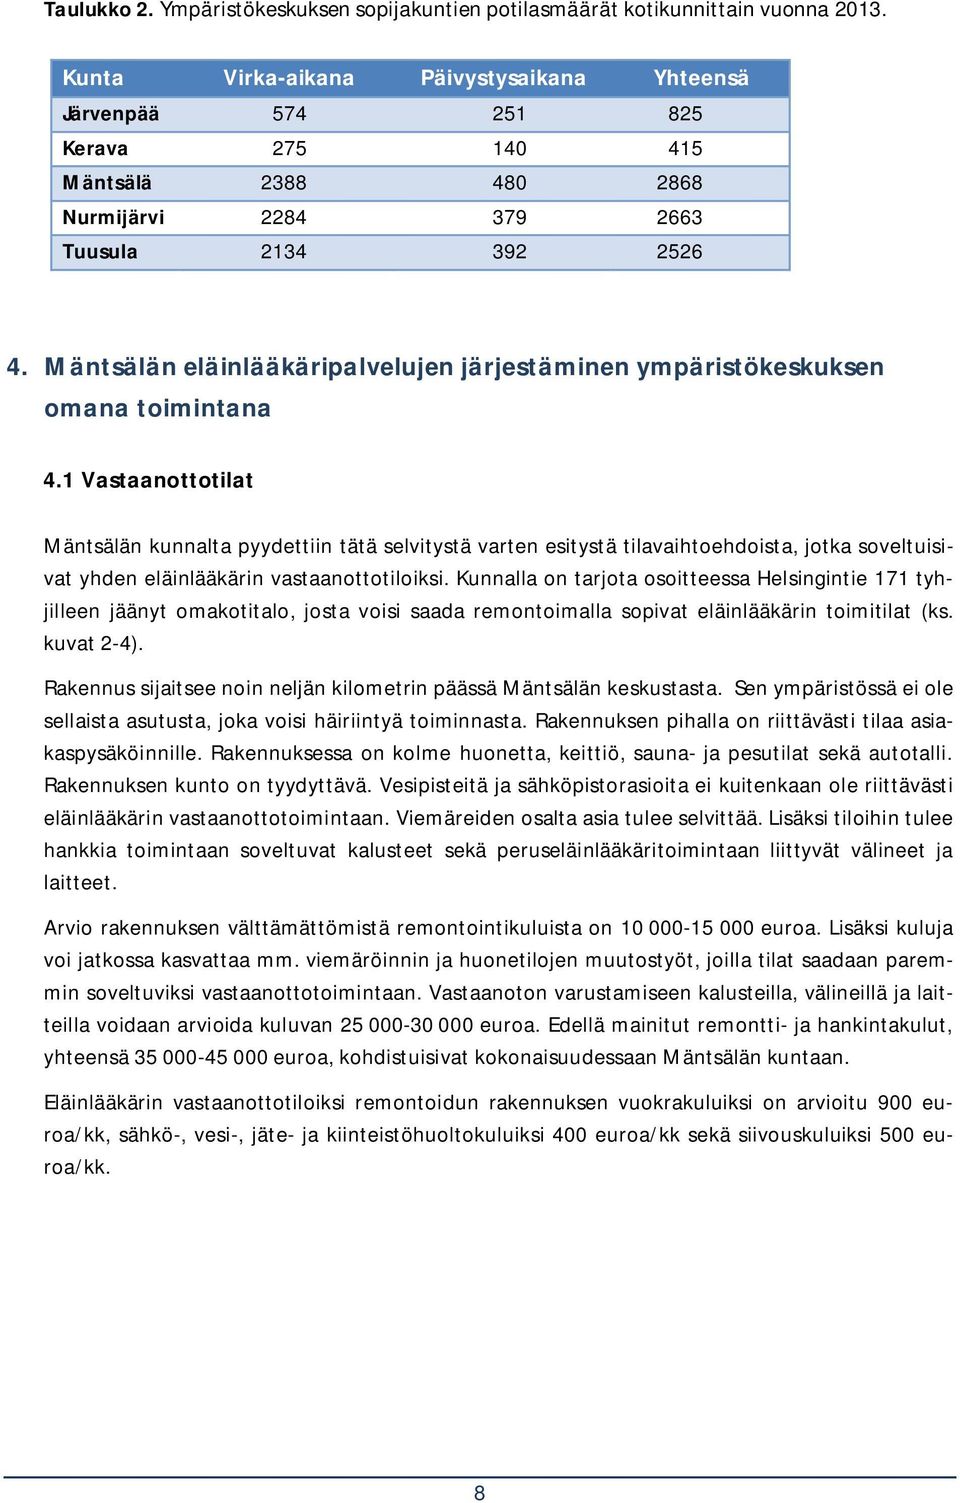 Mäntsälän eläinlääkäripalvelujen järjestäminen ympäristökeskuksen omana toimintana 4.